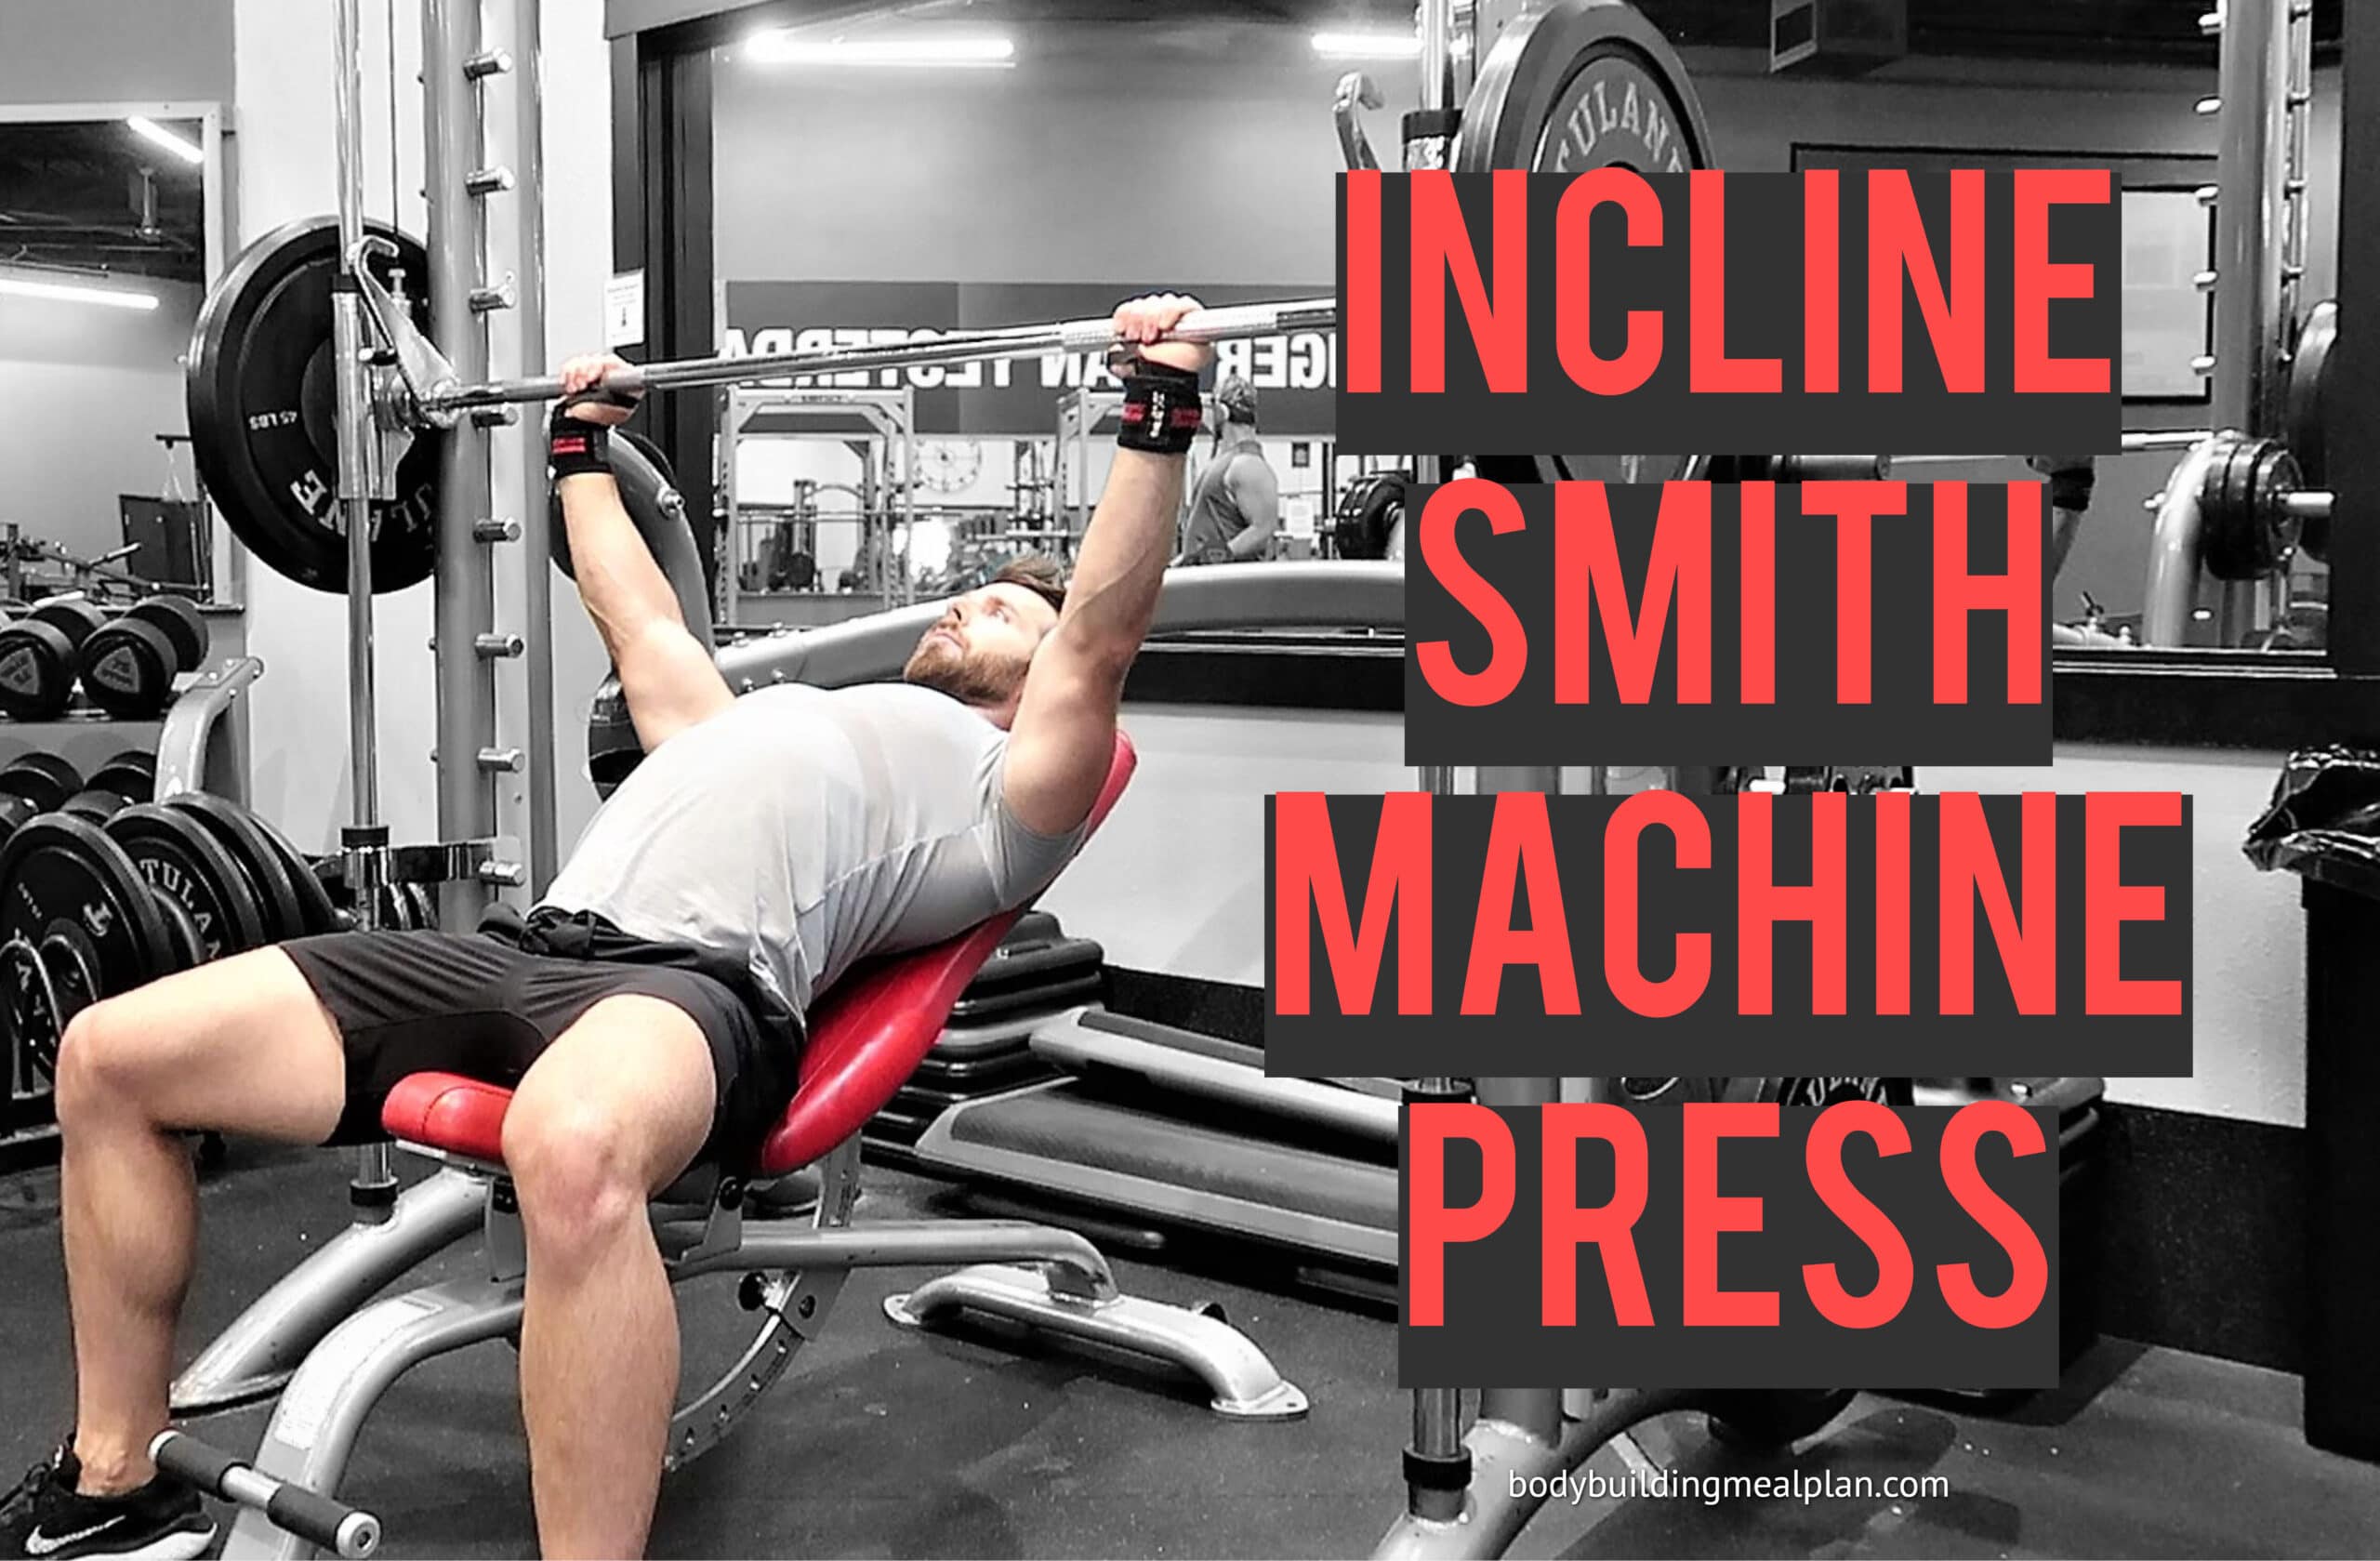 https://www.bodybuildingmealplan.com/wp-content/uploads/Incline-Smith-Machine-Press-scaled.jpg